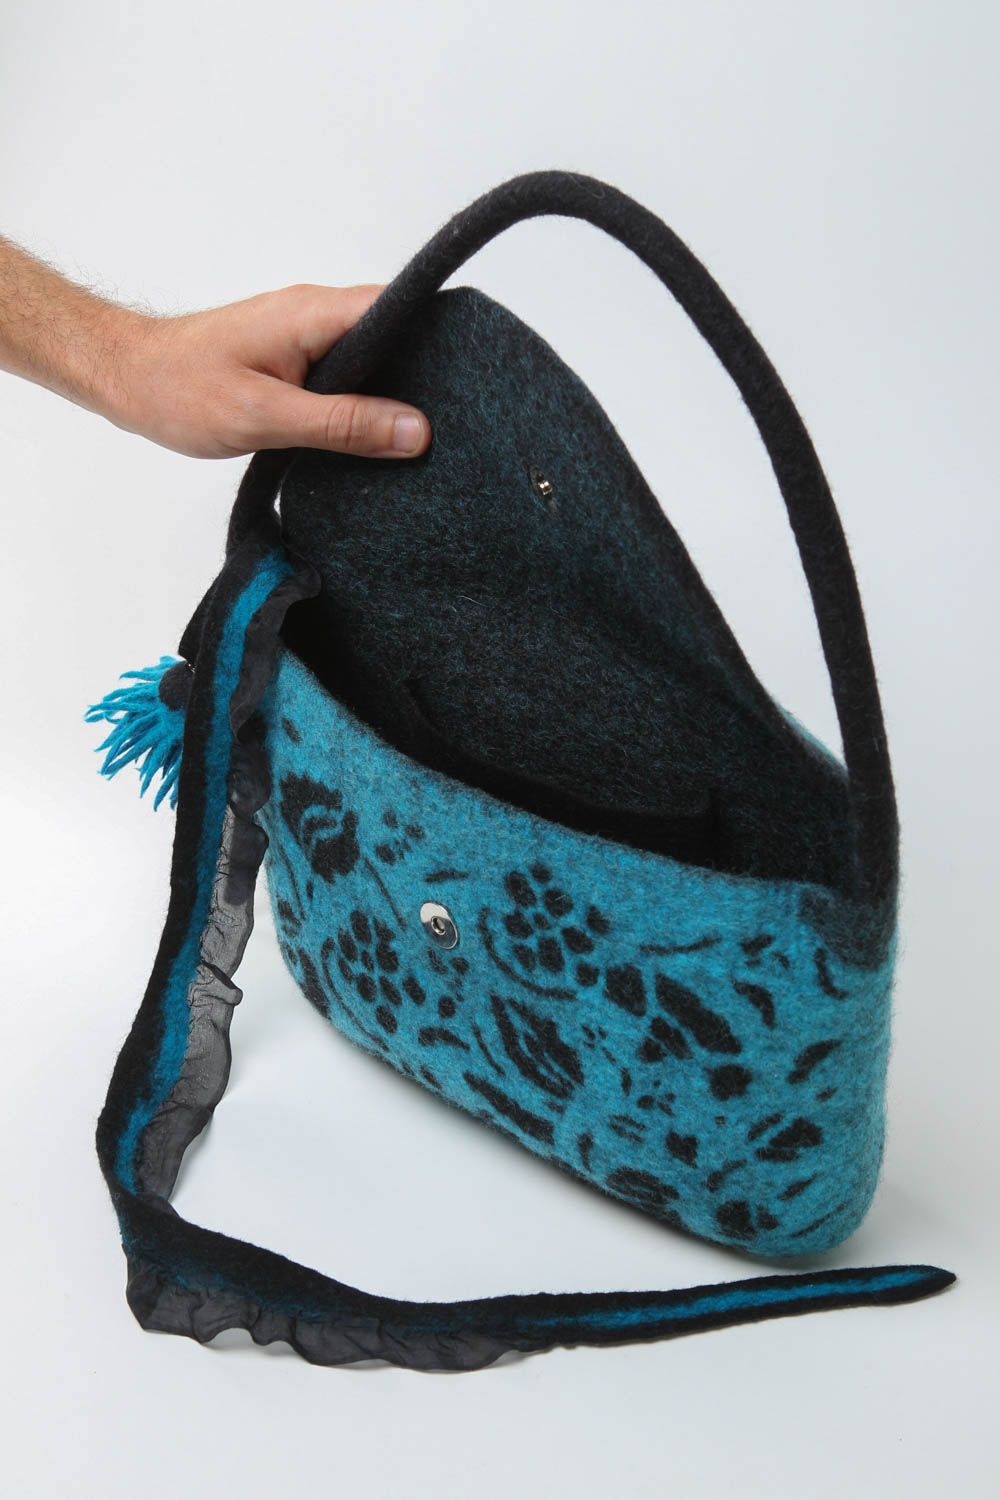 Sac en laine feutrée fait main bleu-noir avec fleur Accessoire pour femme photo 5